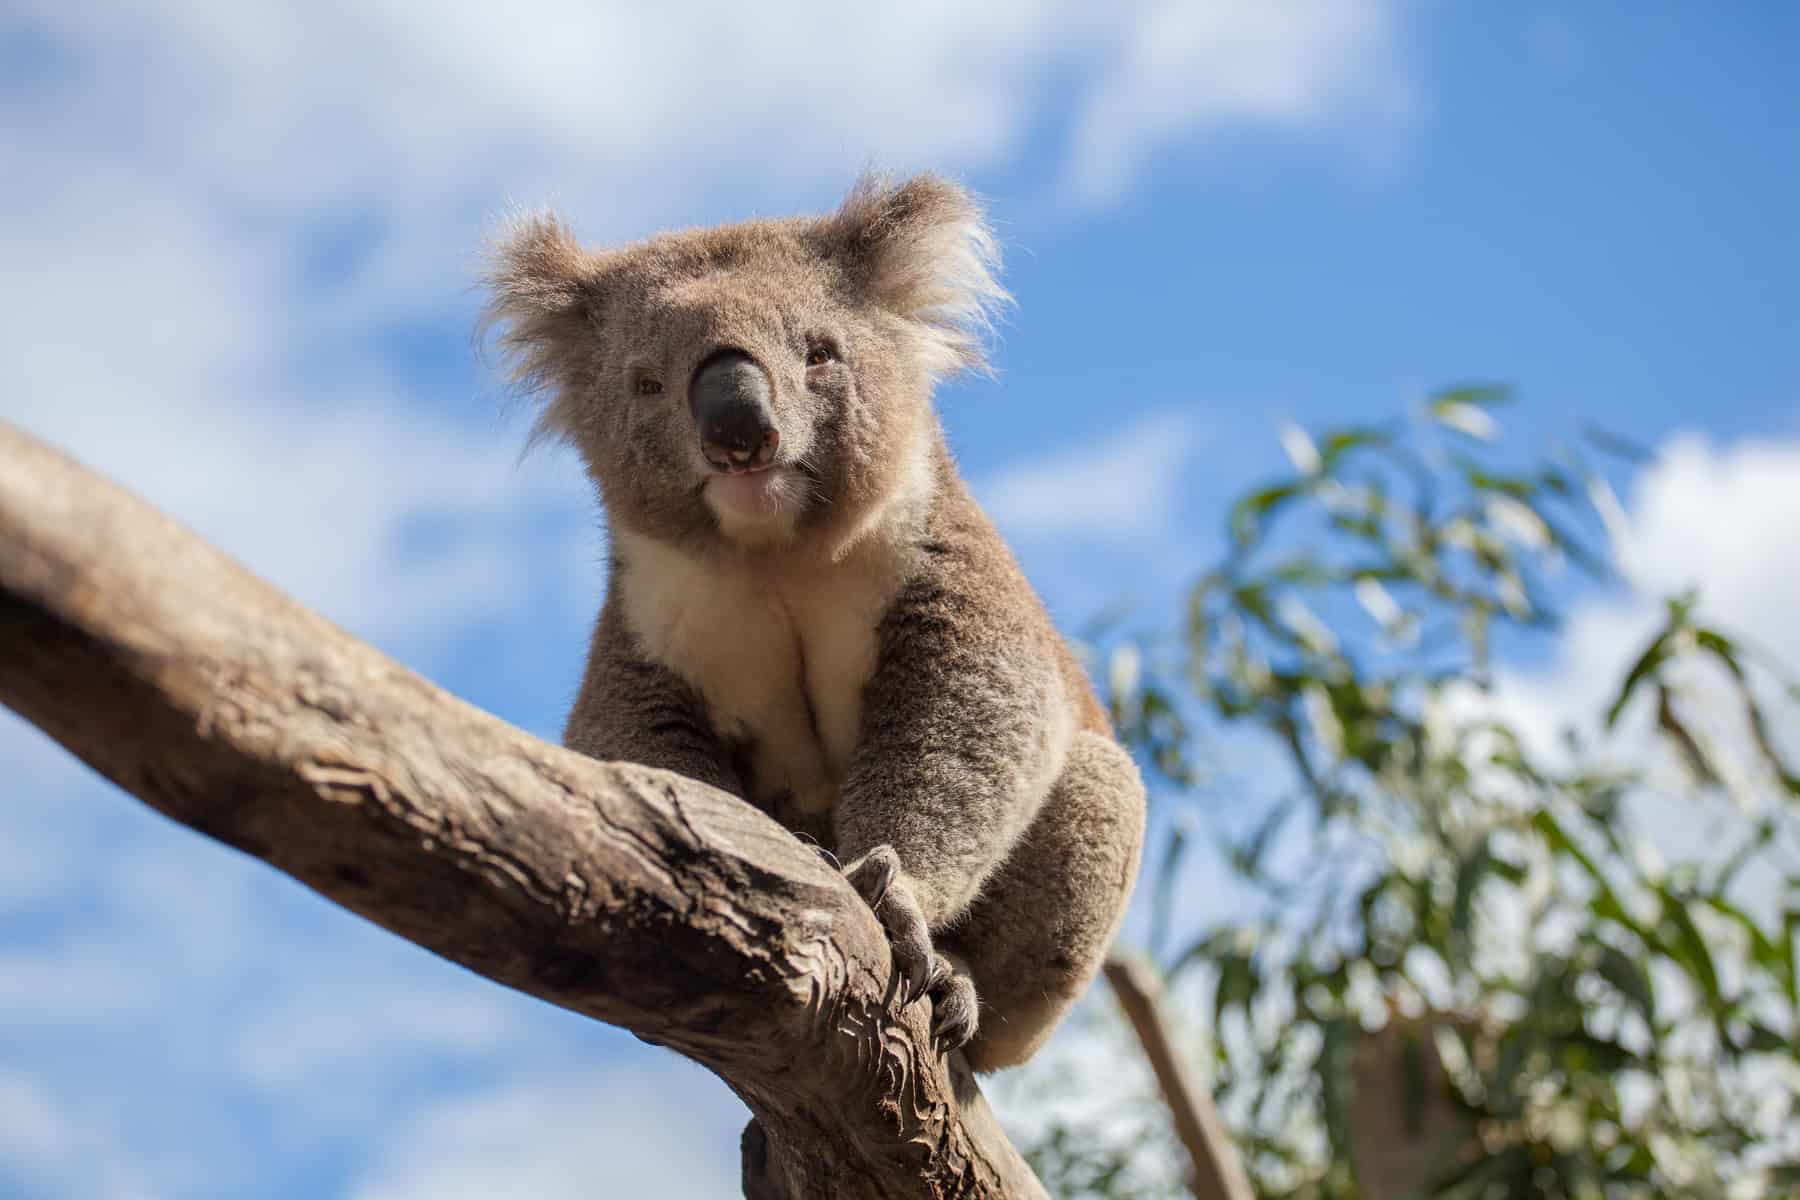 A Koala in a tree